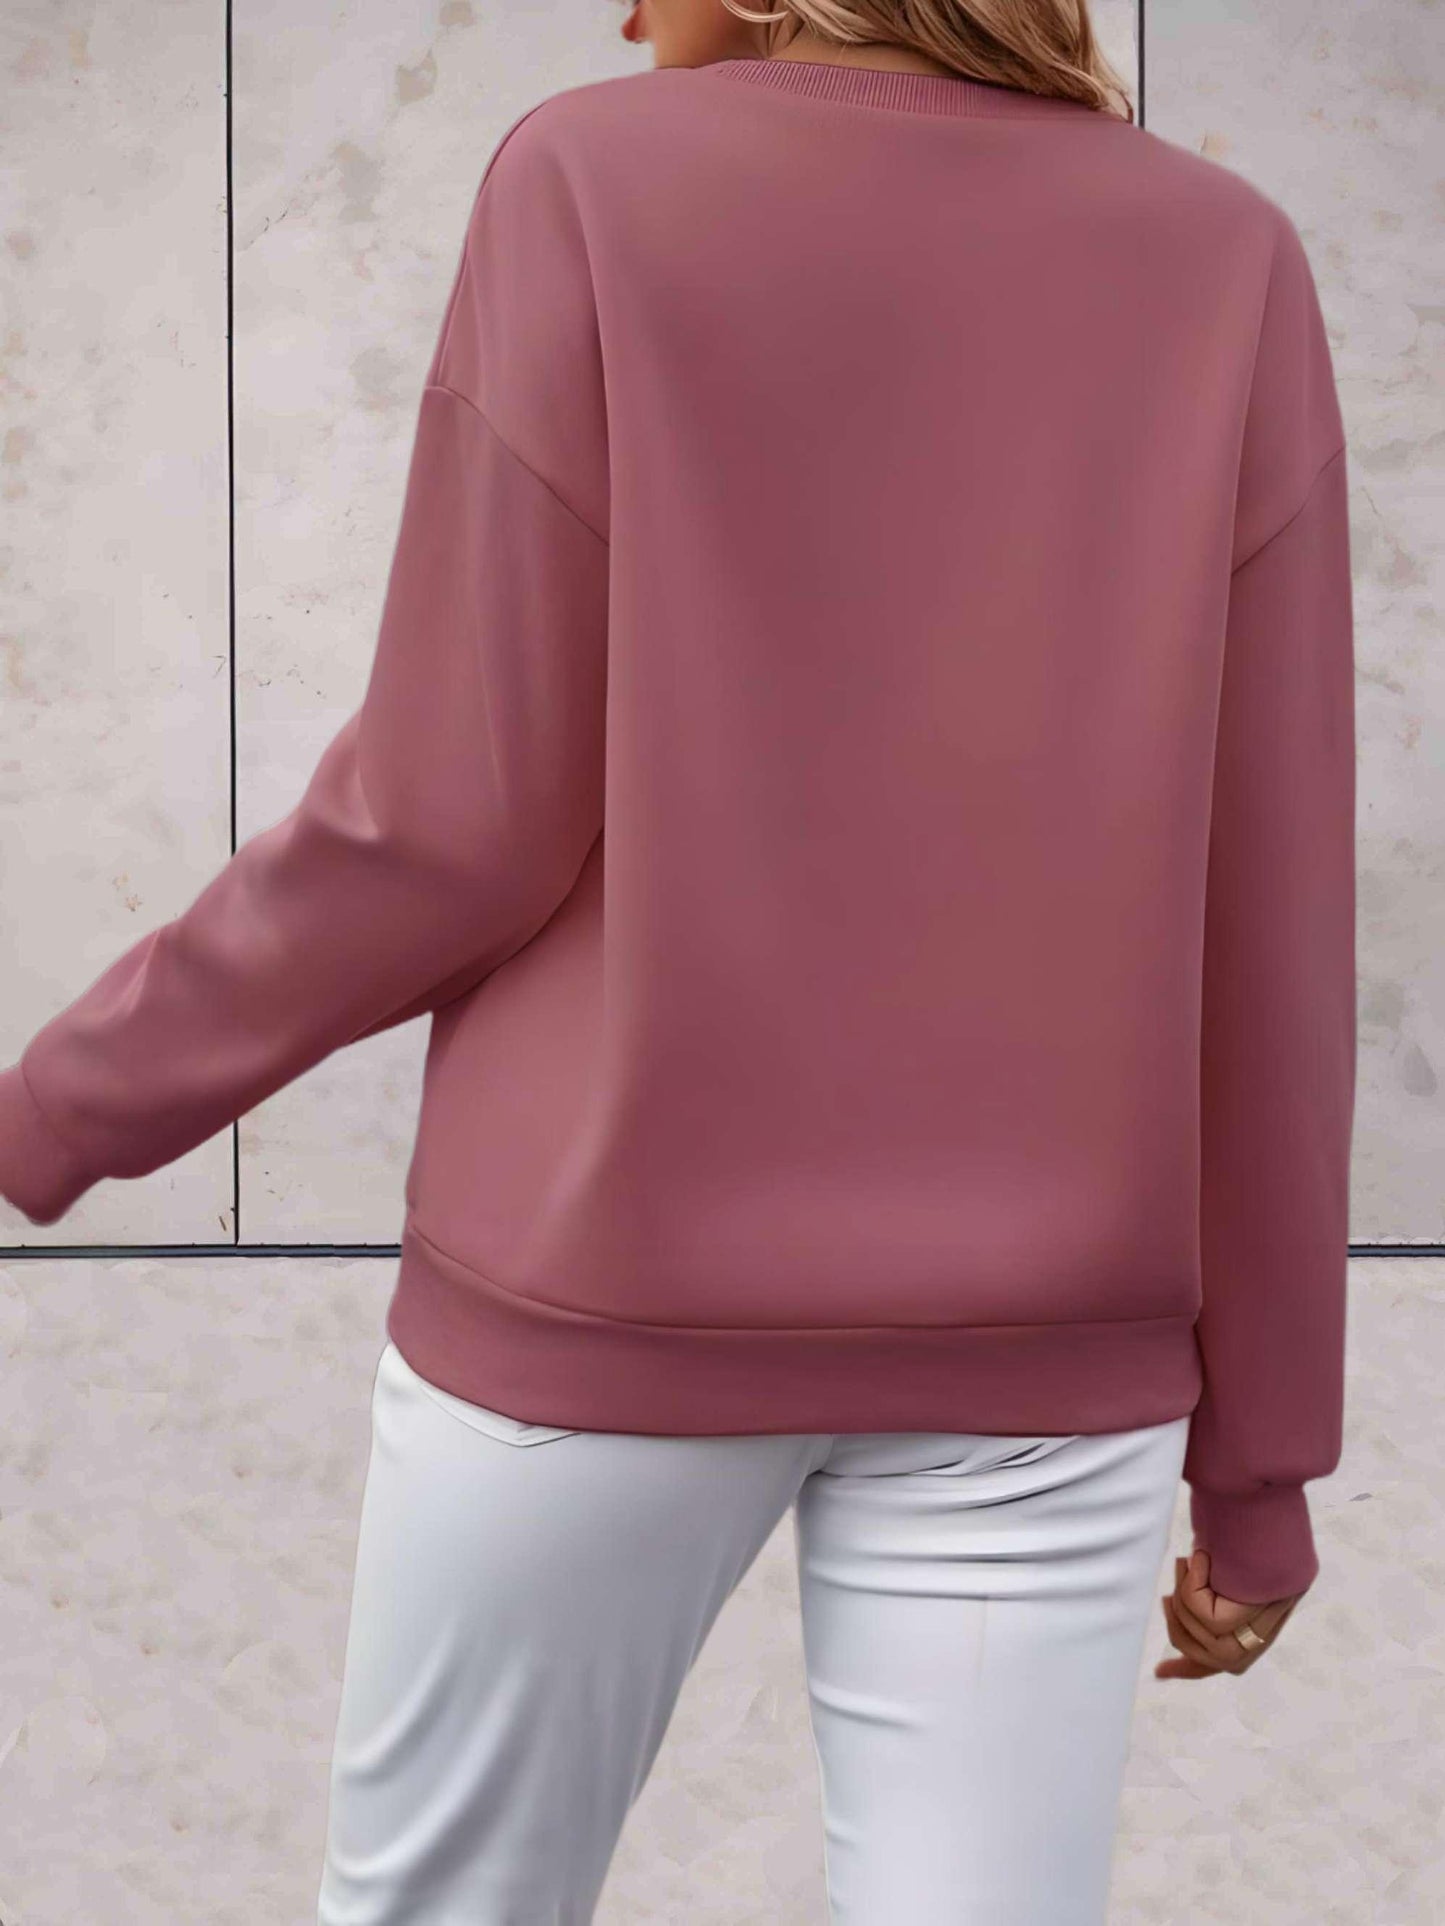 Adalynn - comfortabele stijlvolle trui in verschillende kleuren met een statement erop gedrukt - Sky-Sense